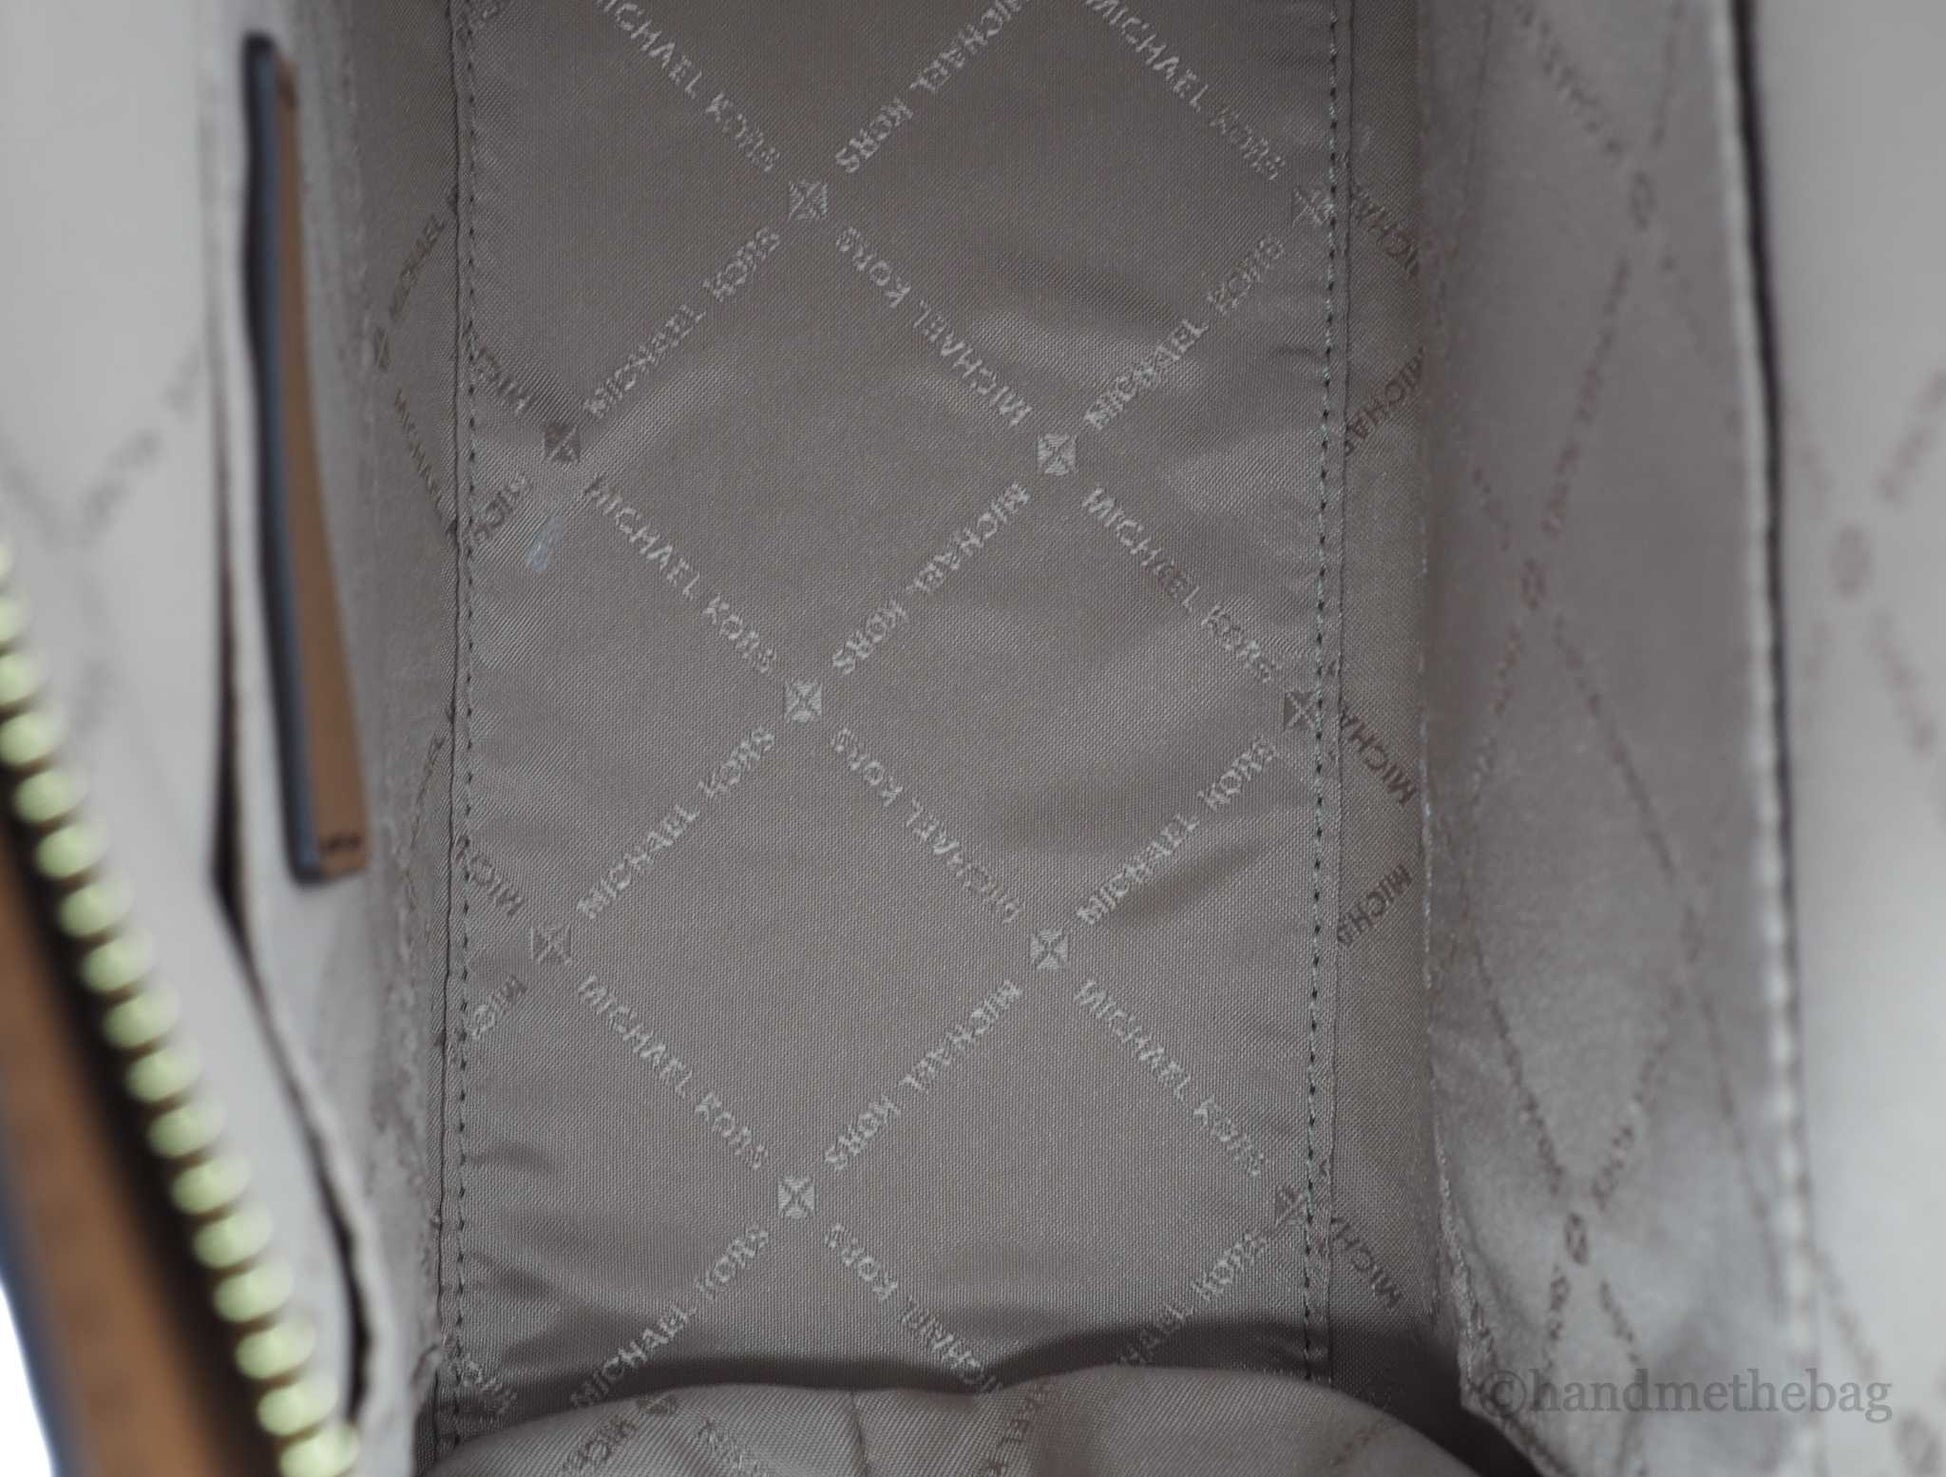 Michael Kors avril brown pvc satchel bag inside on white background